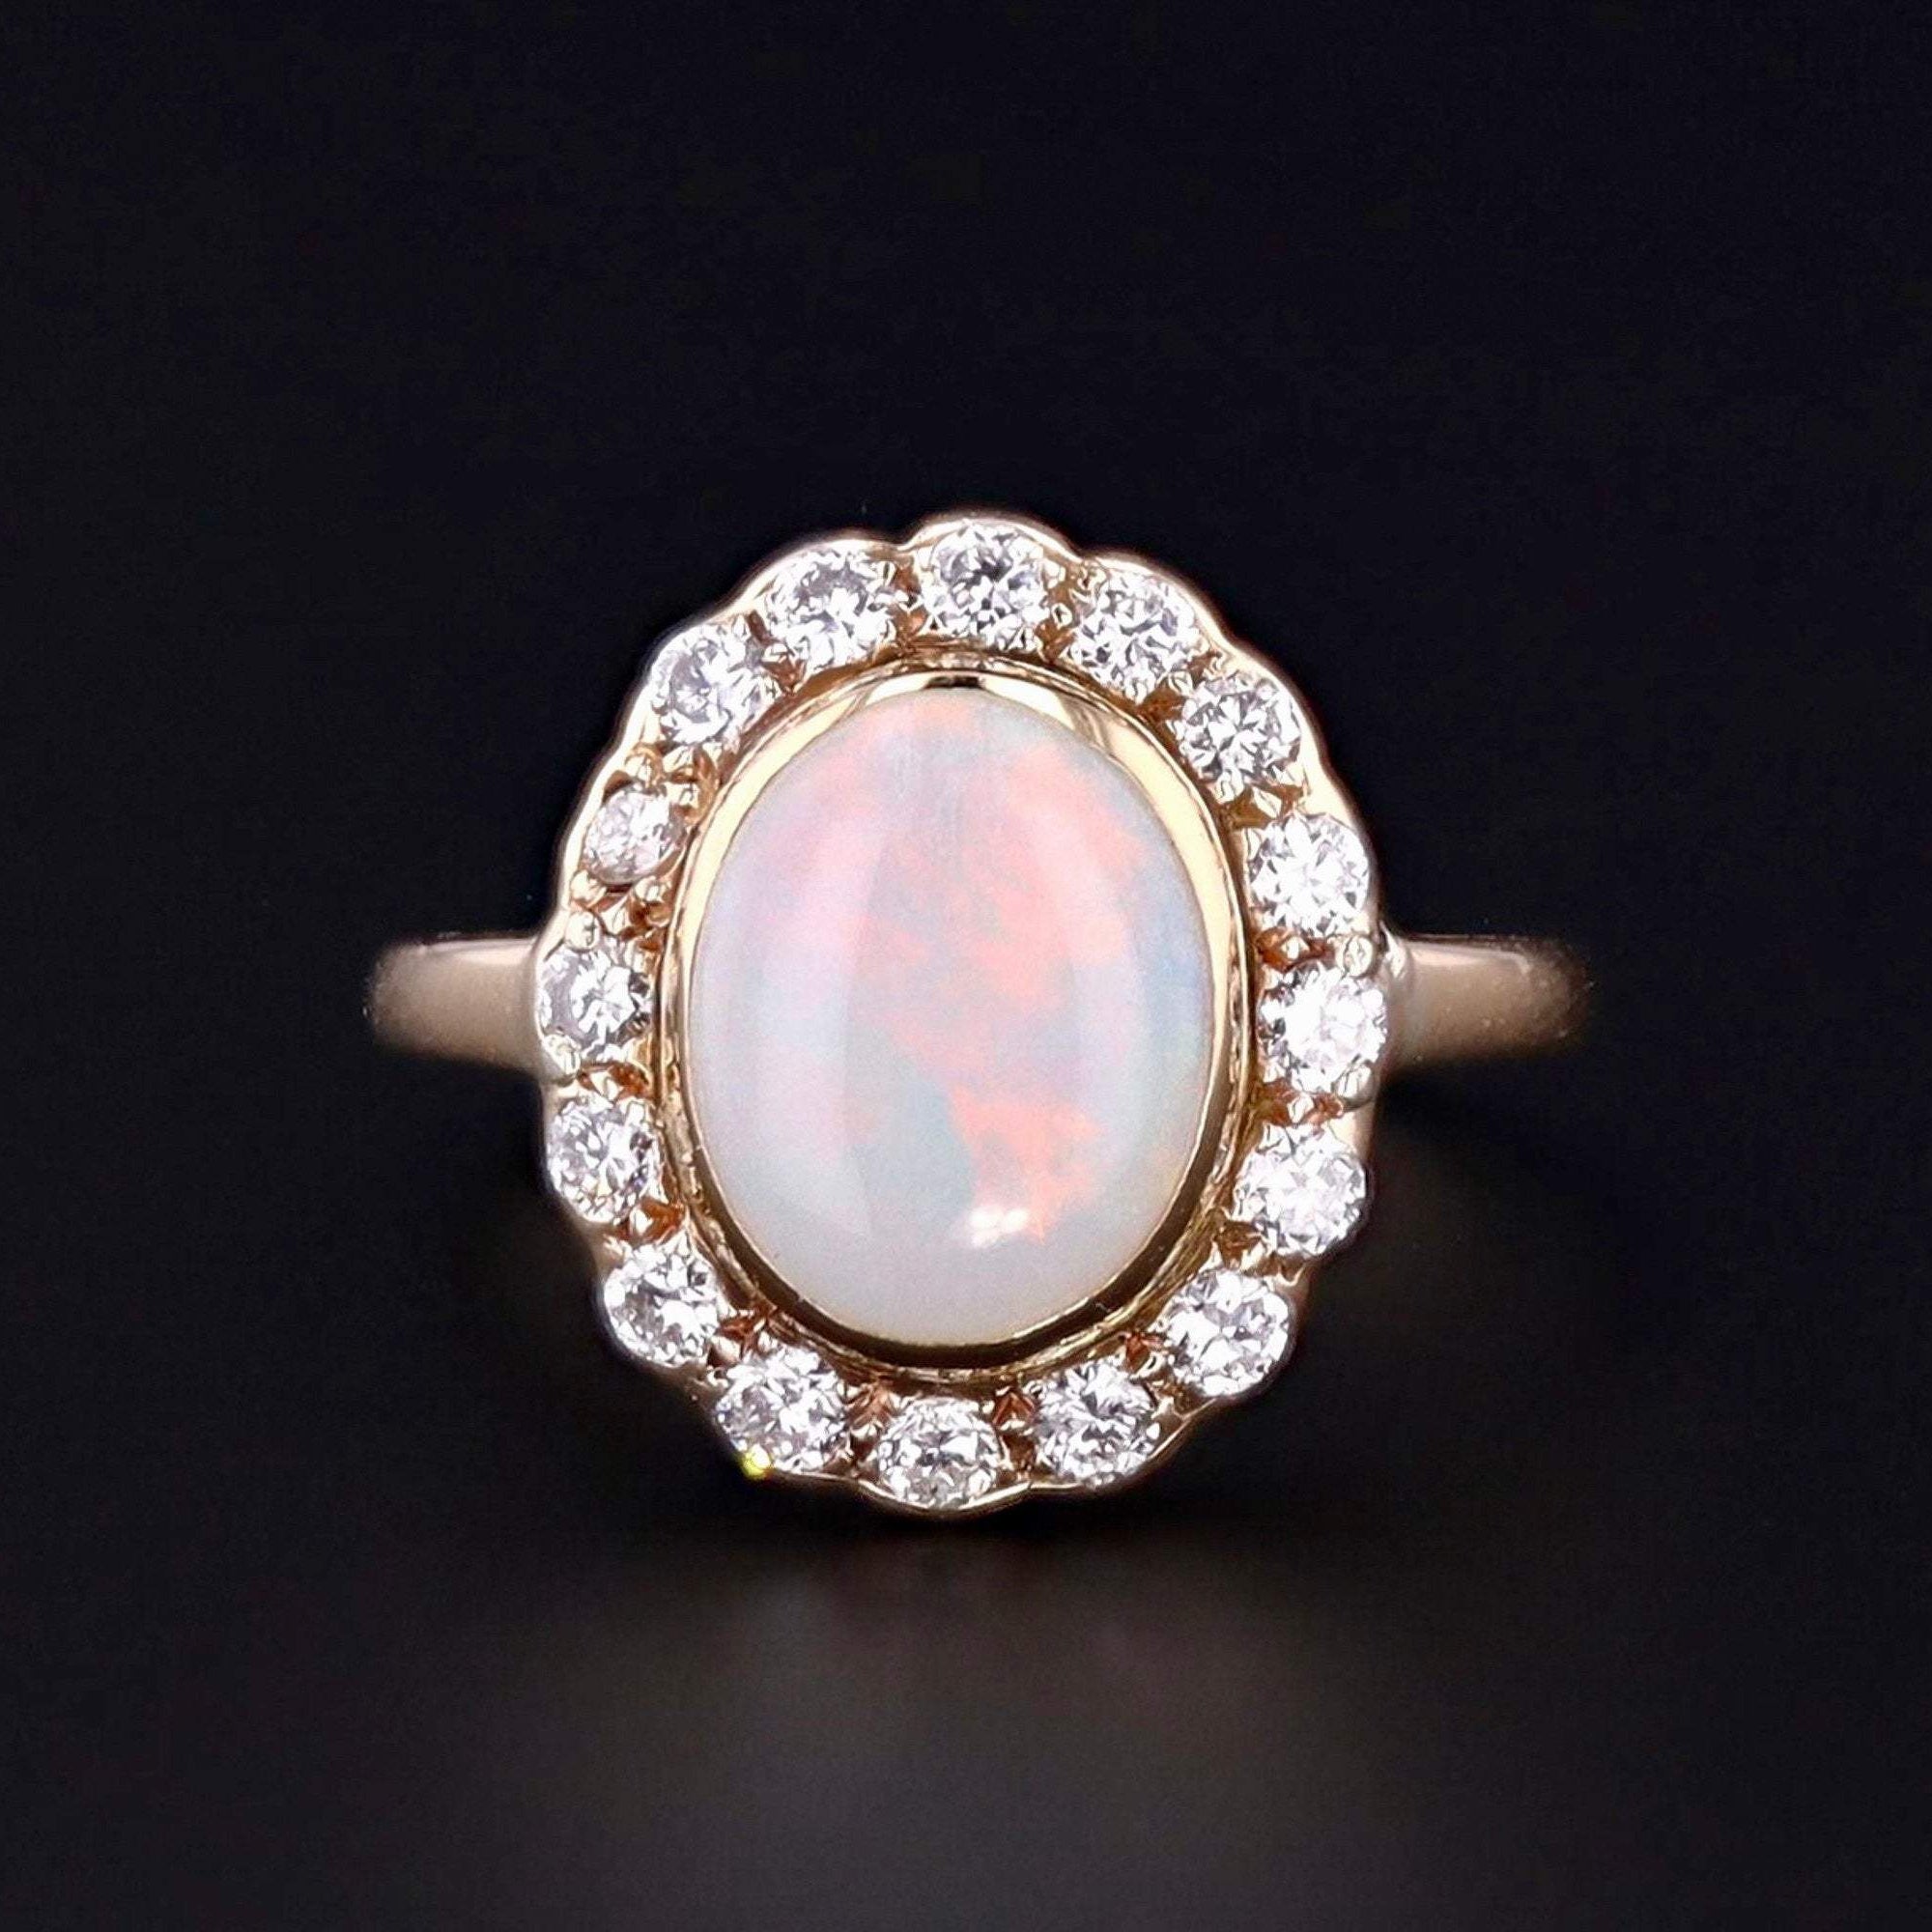 Vintage Opal & Diamond Ring | 14k White Gold Opal Ring | White Opal Ring | Vintage Opal Ring | Cocktail Ring